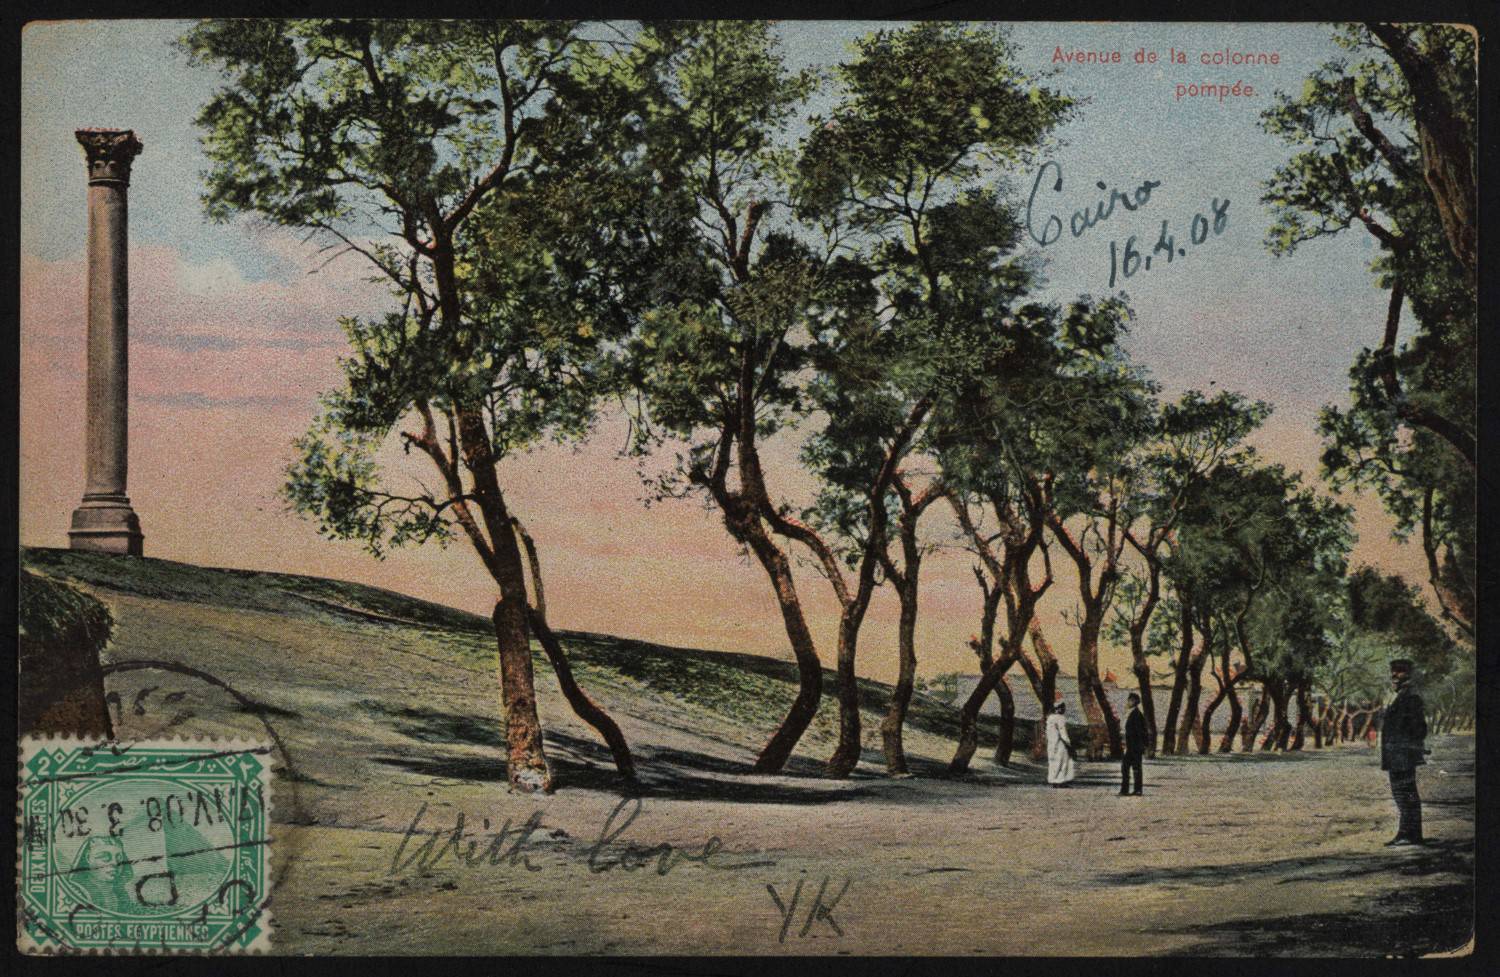 Postcard of Column Avenue